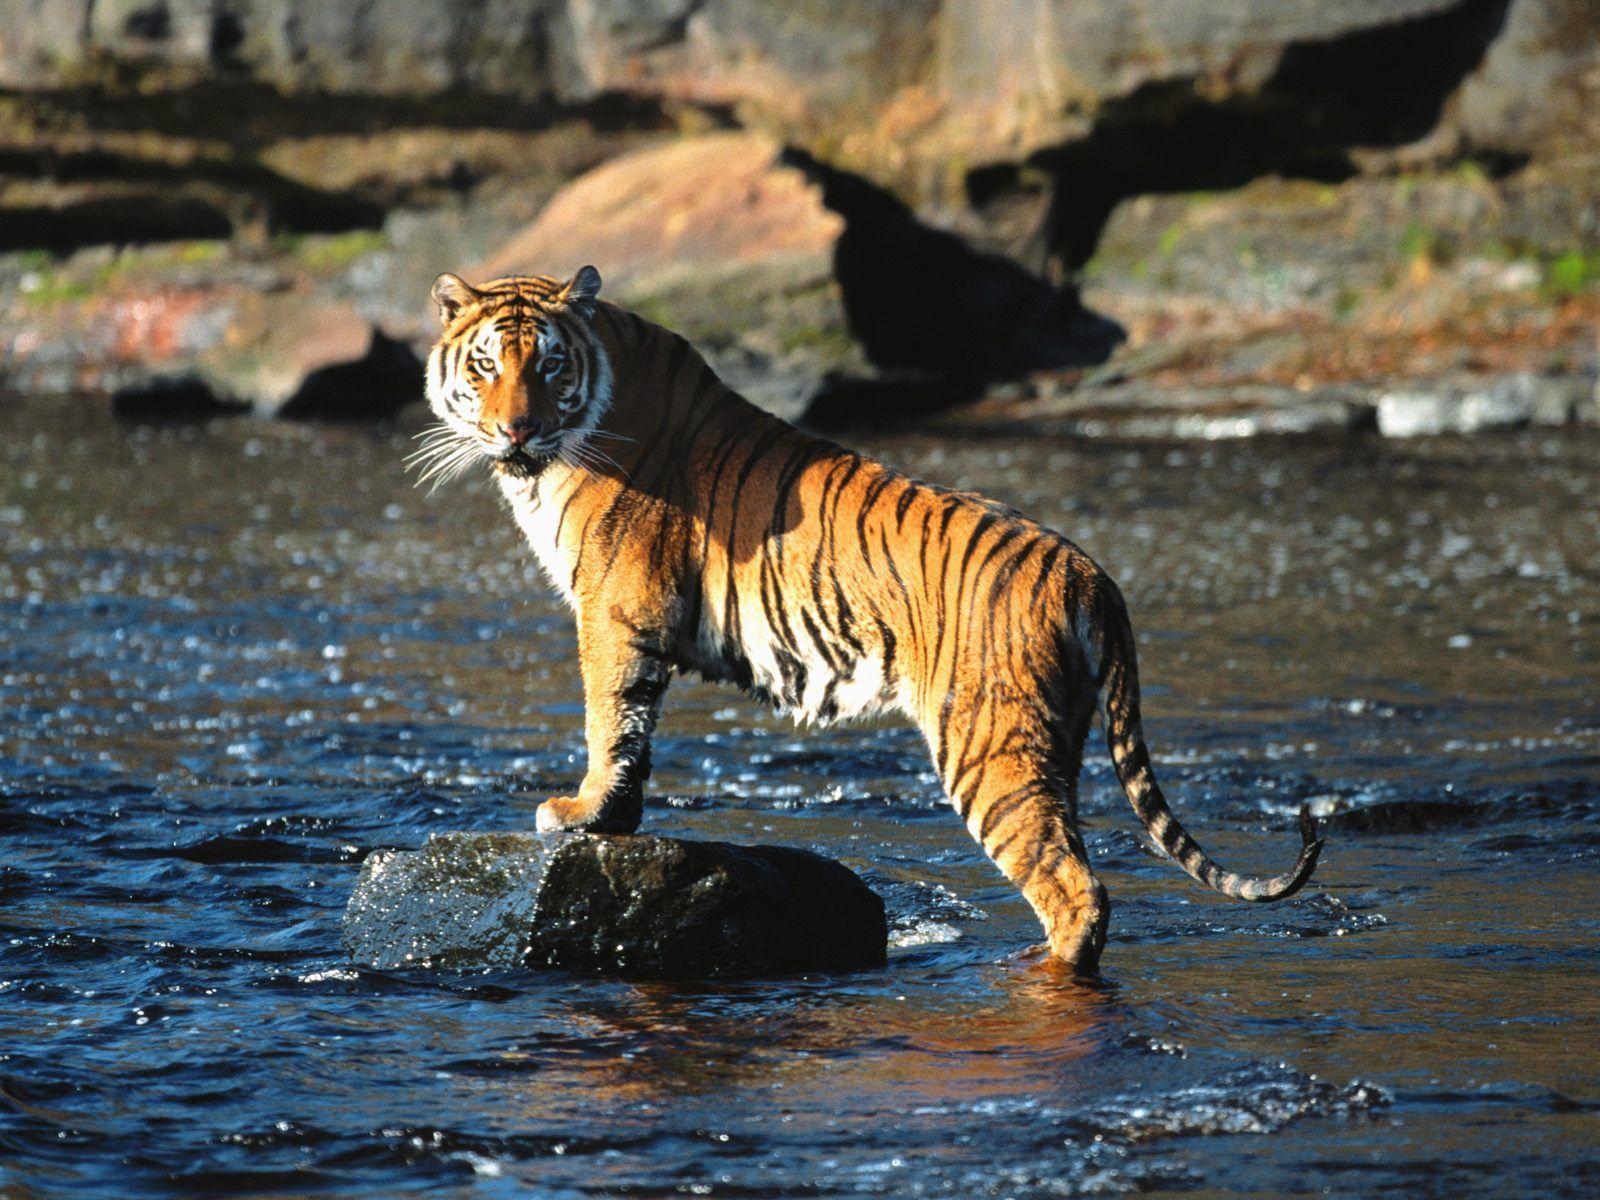 Sundarbans National Park is a tiger reserve, national park